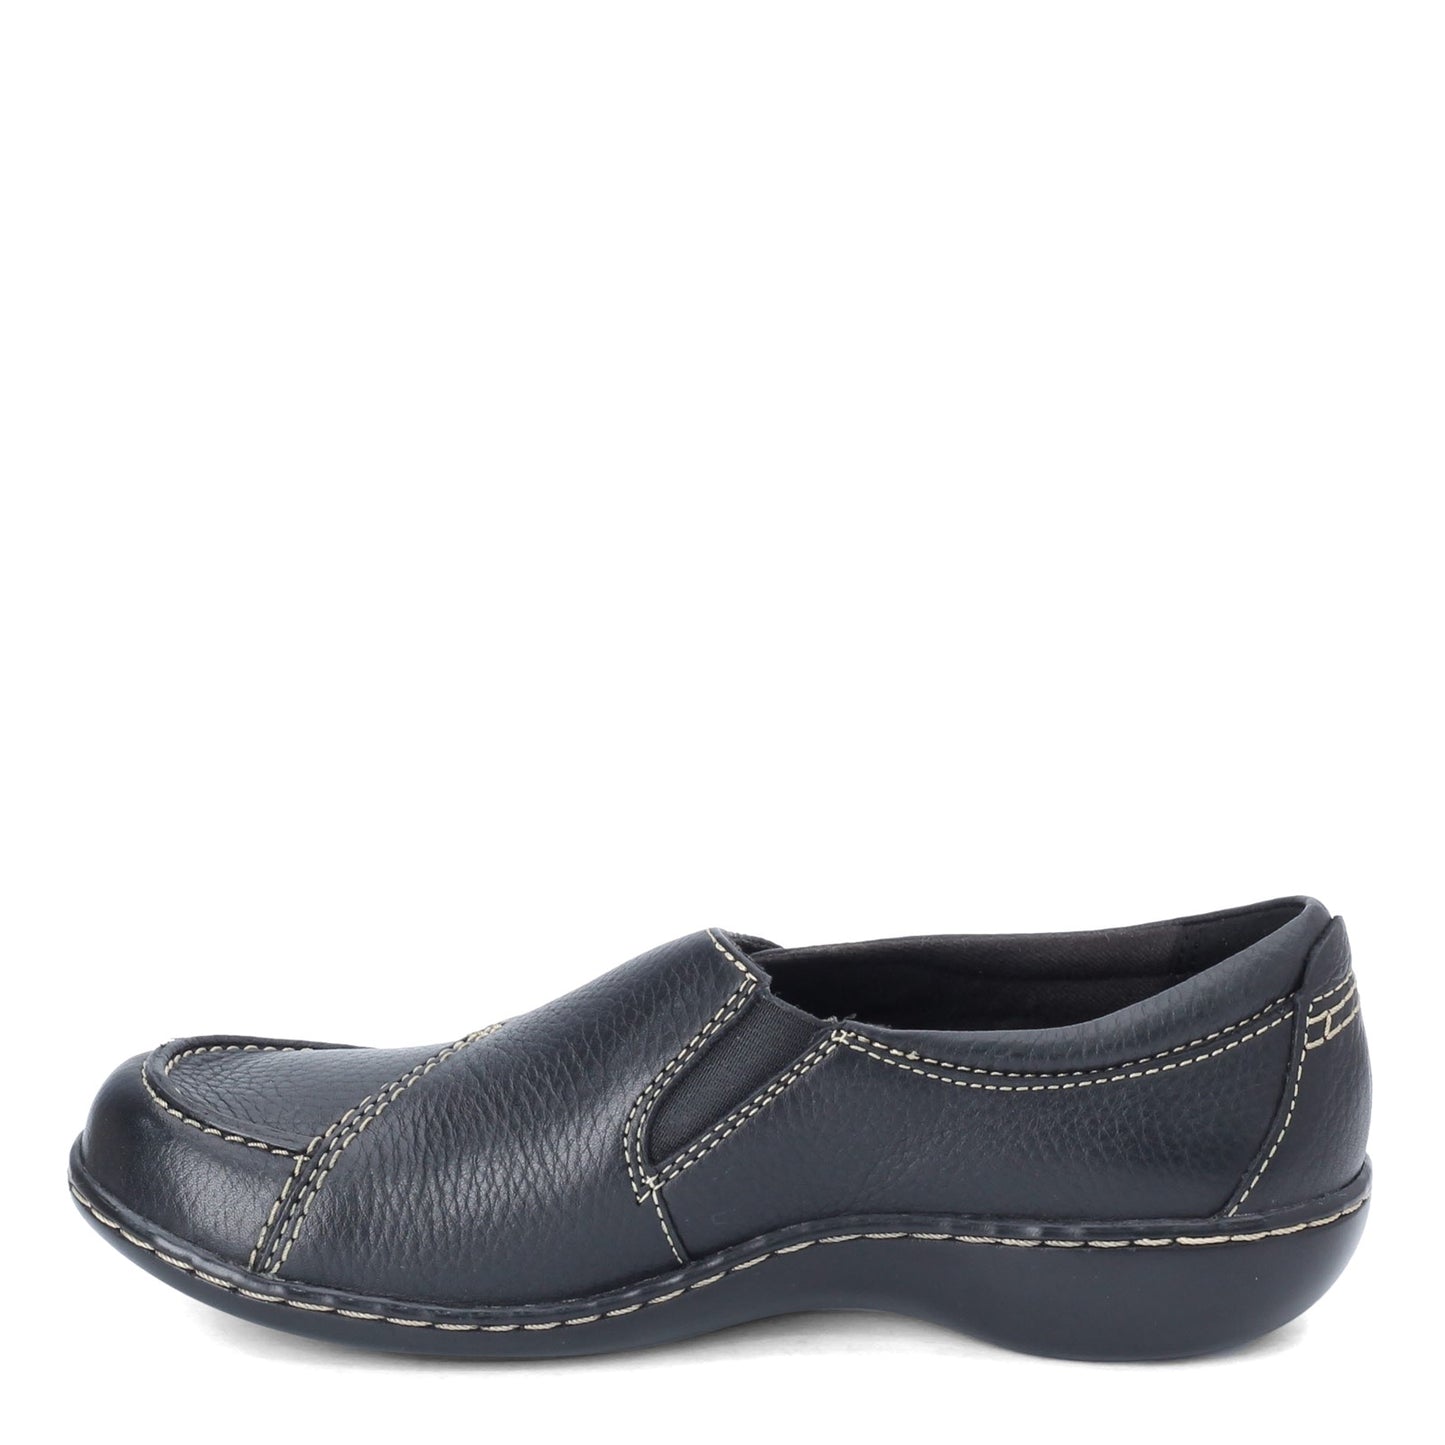 Peltz Shoes  Women's Clarks Ashland Lane Q Slip-On BLACK 26063064